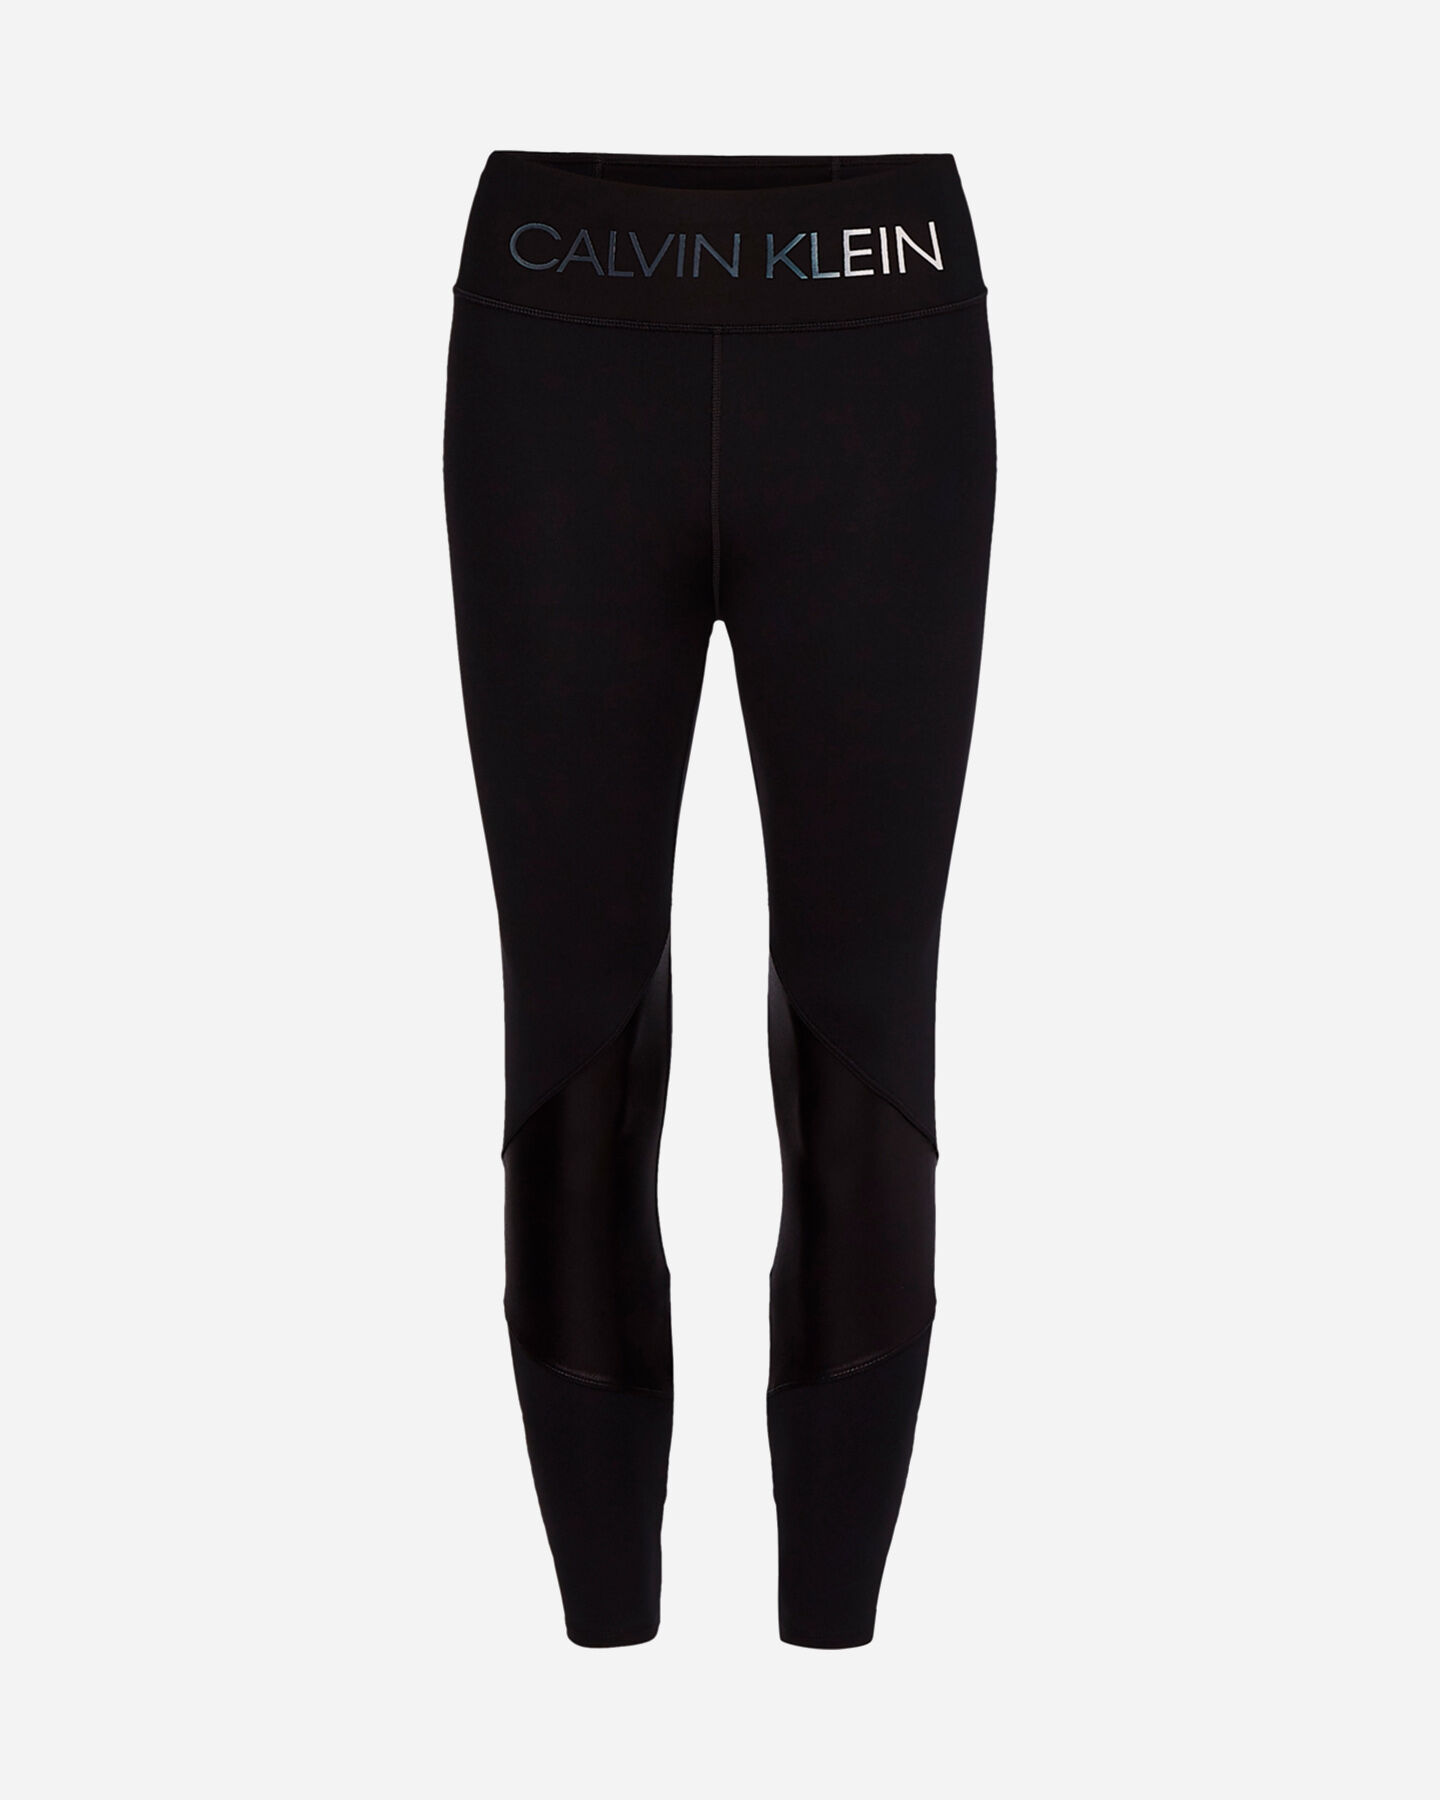  Leggings CALVIN KLEIN SPORT CROSSED RETRO 7/8 W S4092318|007|XS scatto 0